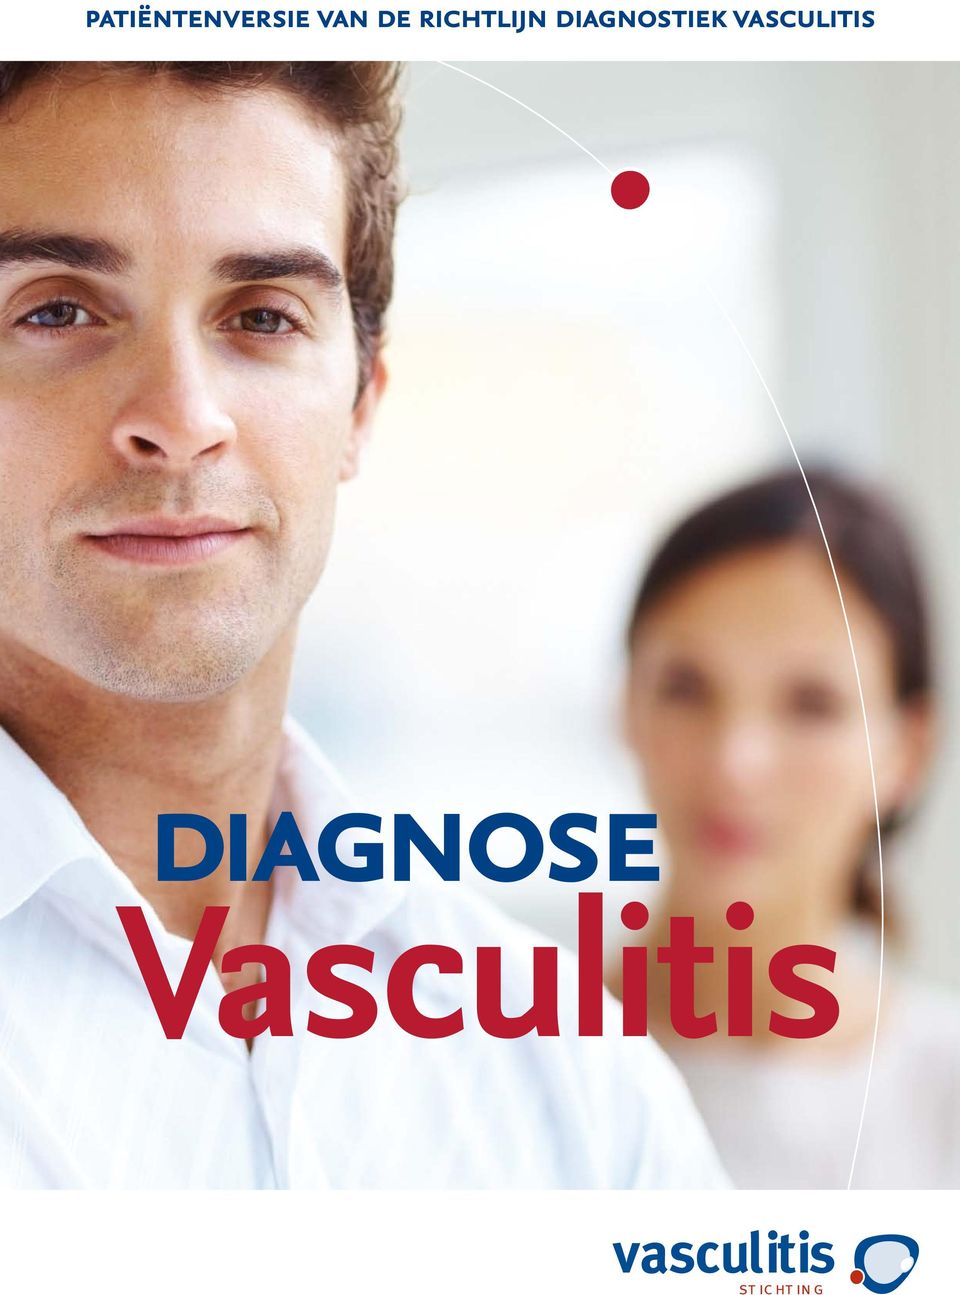 vasculitis diagnose